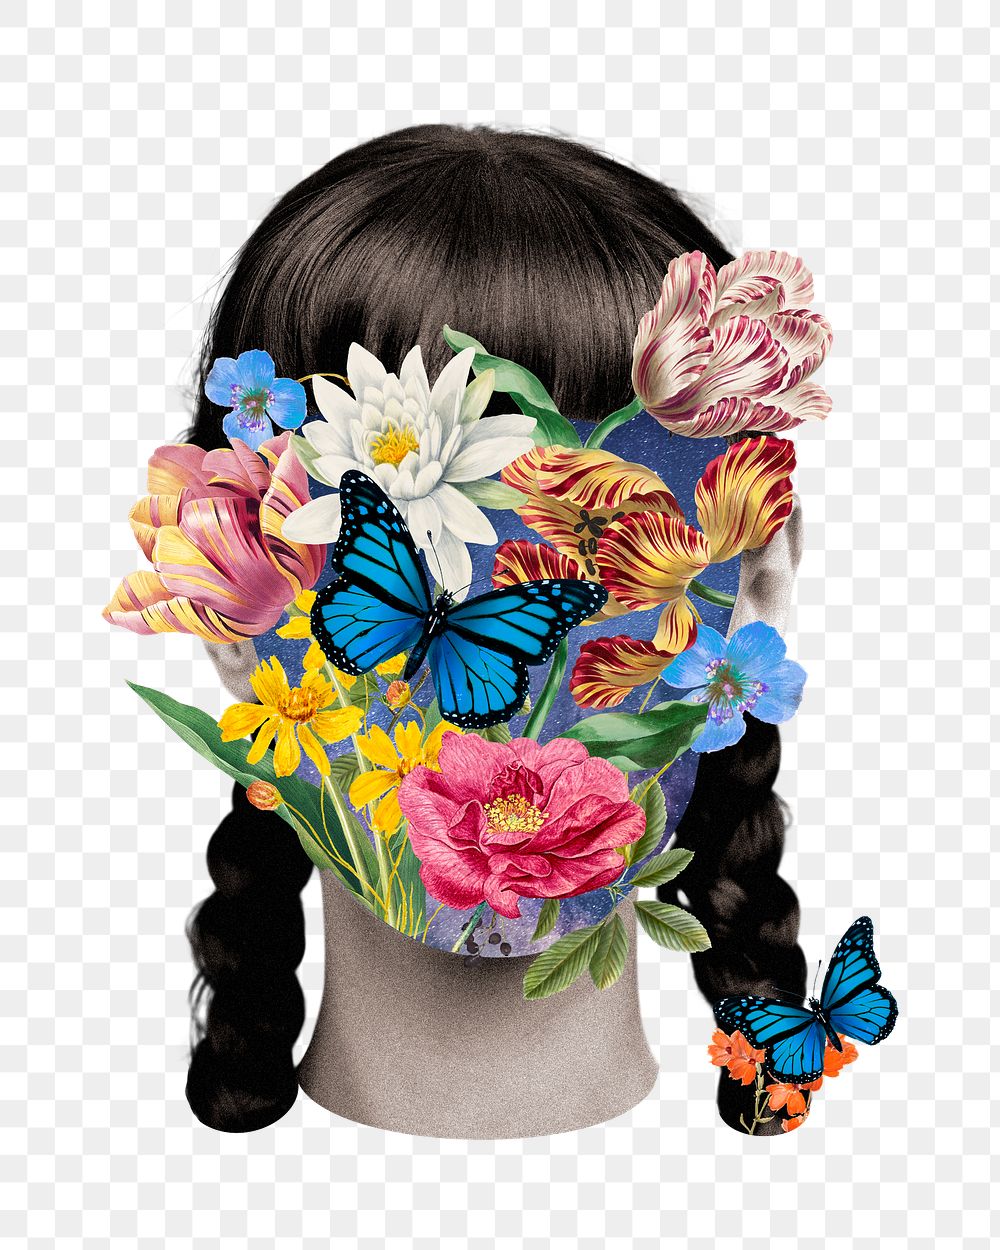 PNG Flower woman portrait collage art, surreal escapism, collage element on transparent background